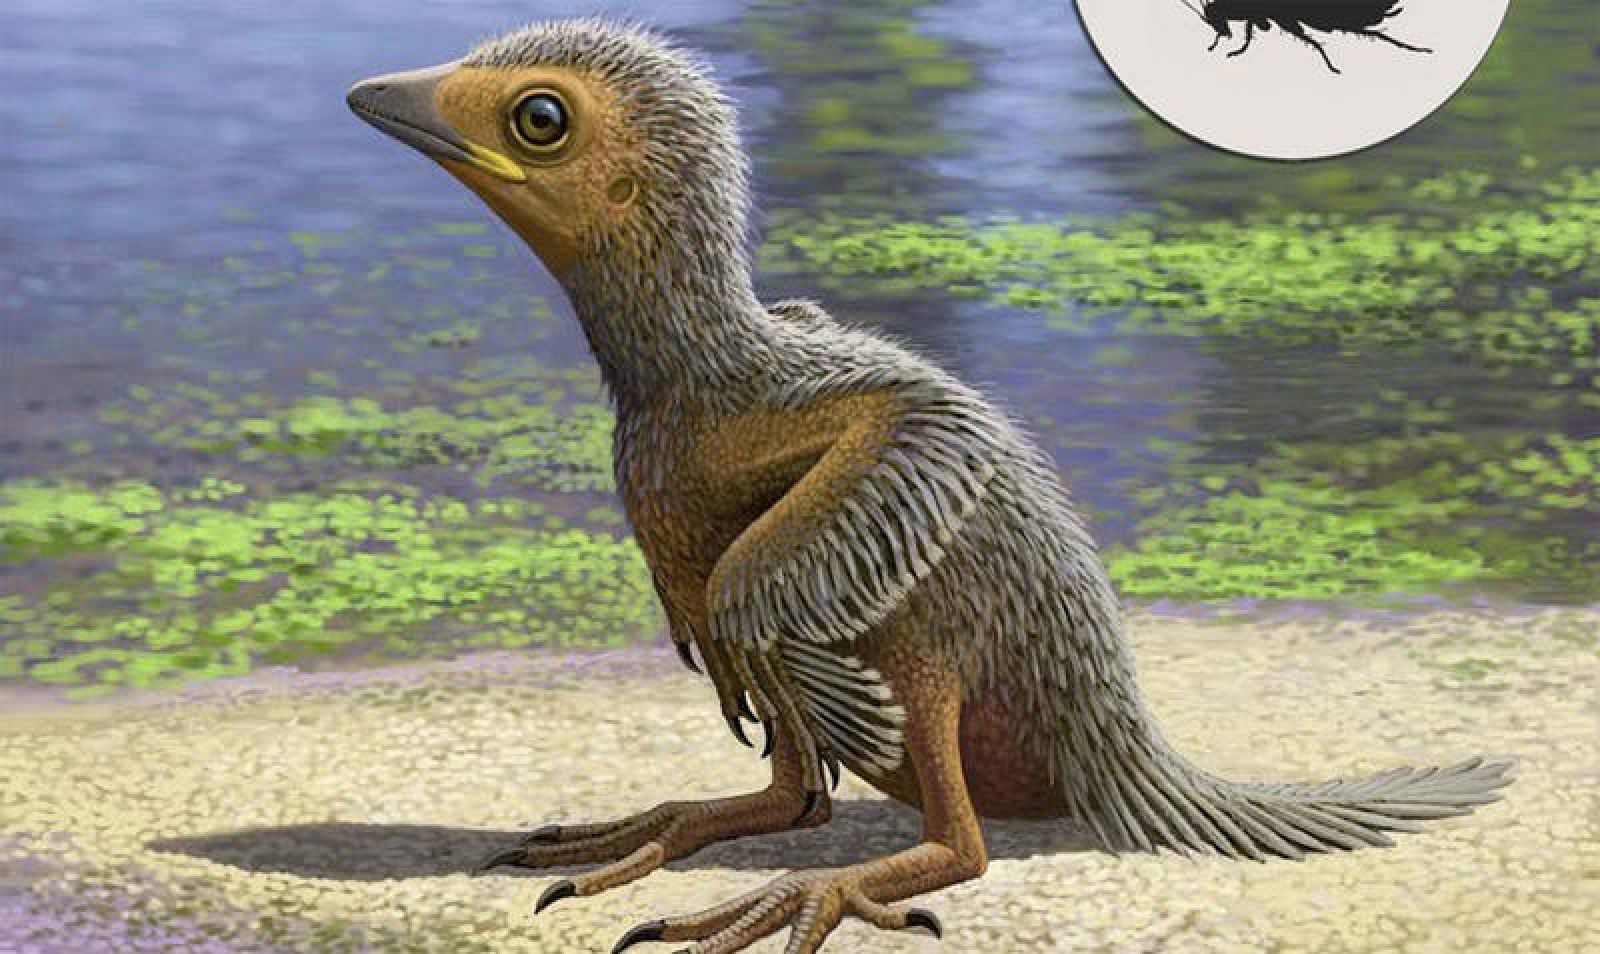 Representación del pollito prehistórico del grupo Enantiornithe.